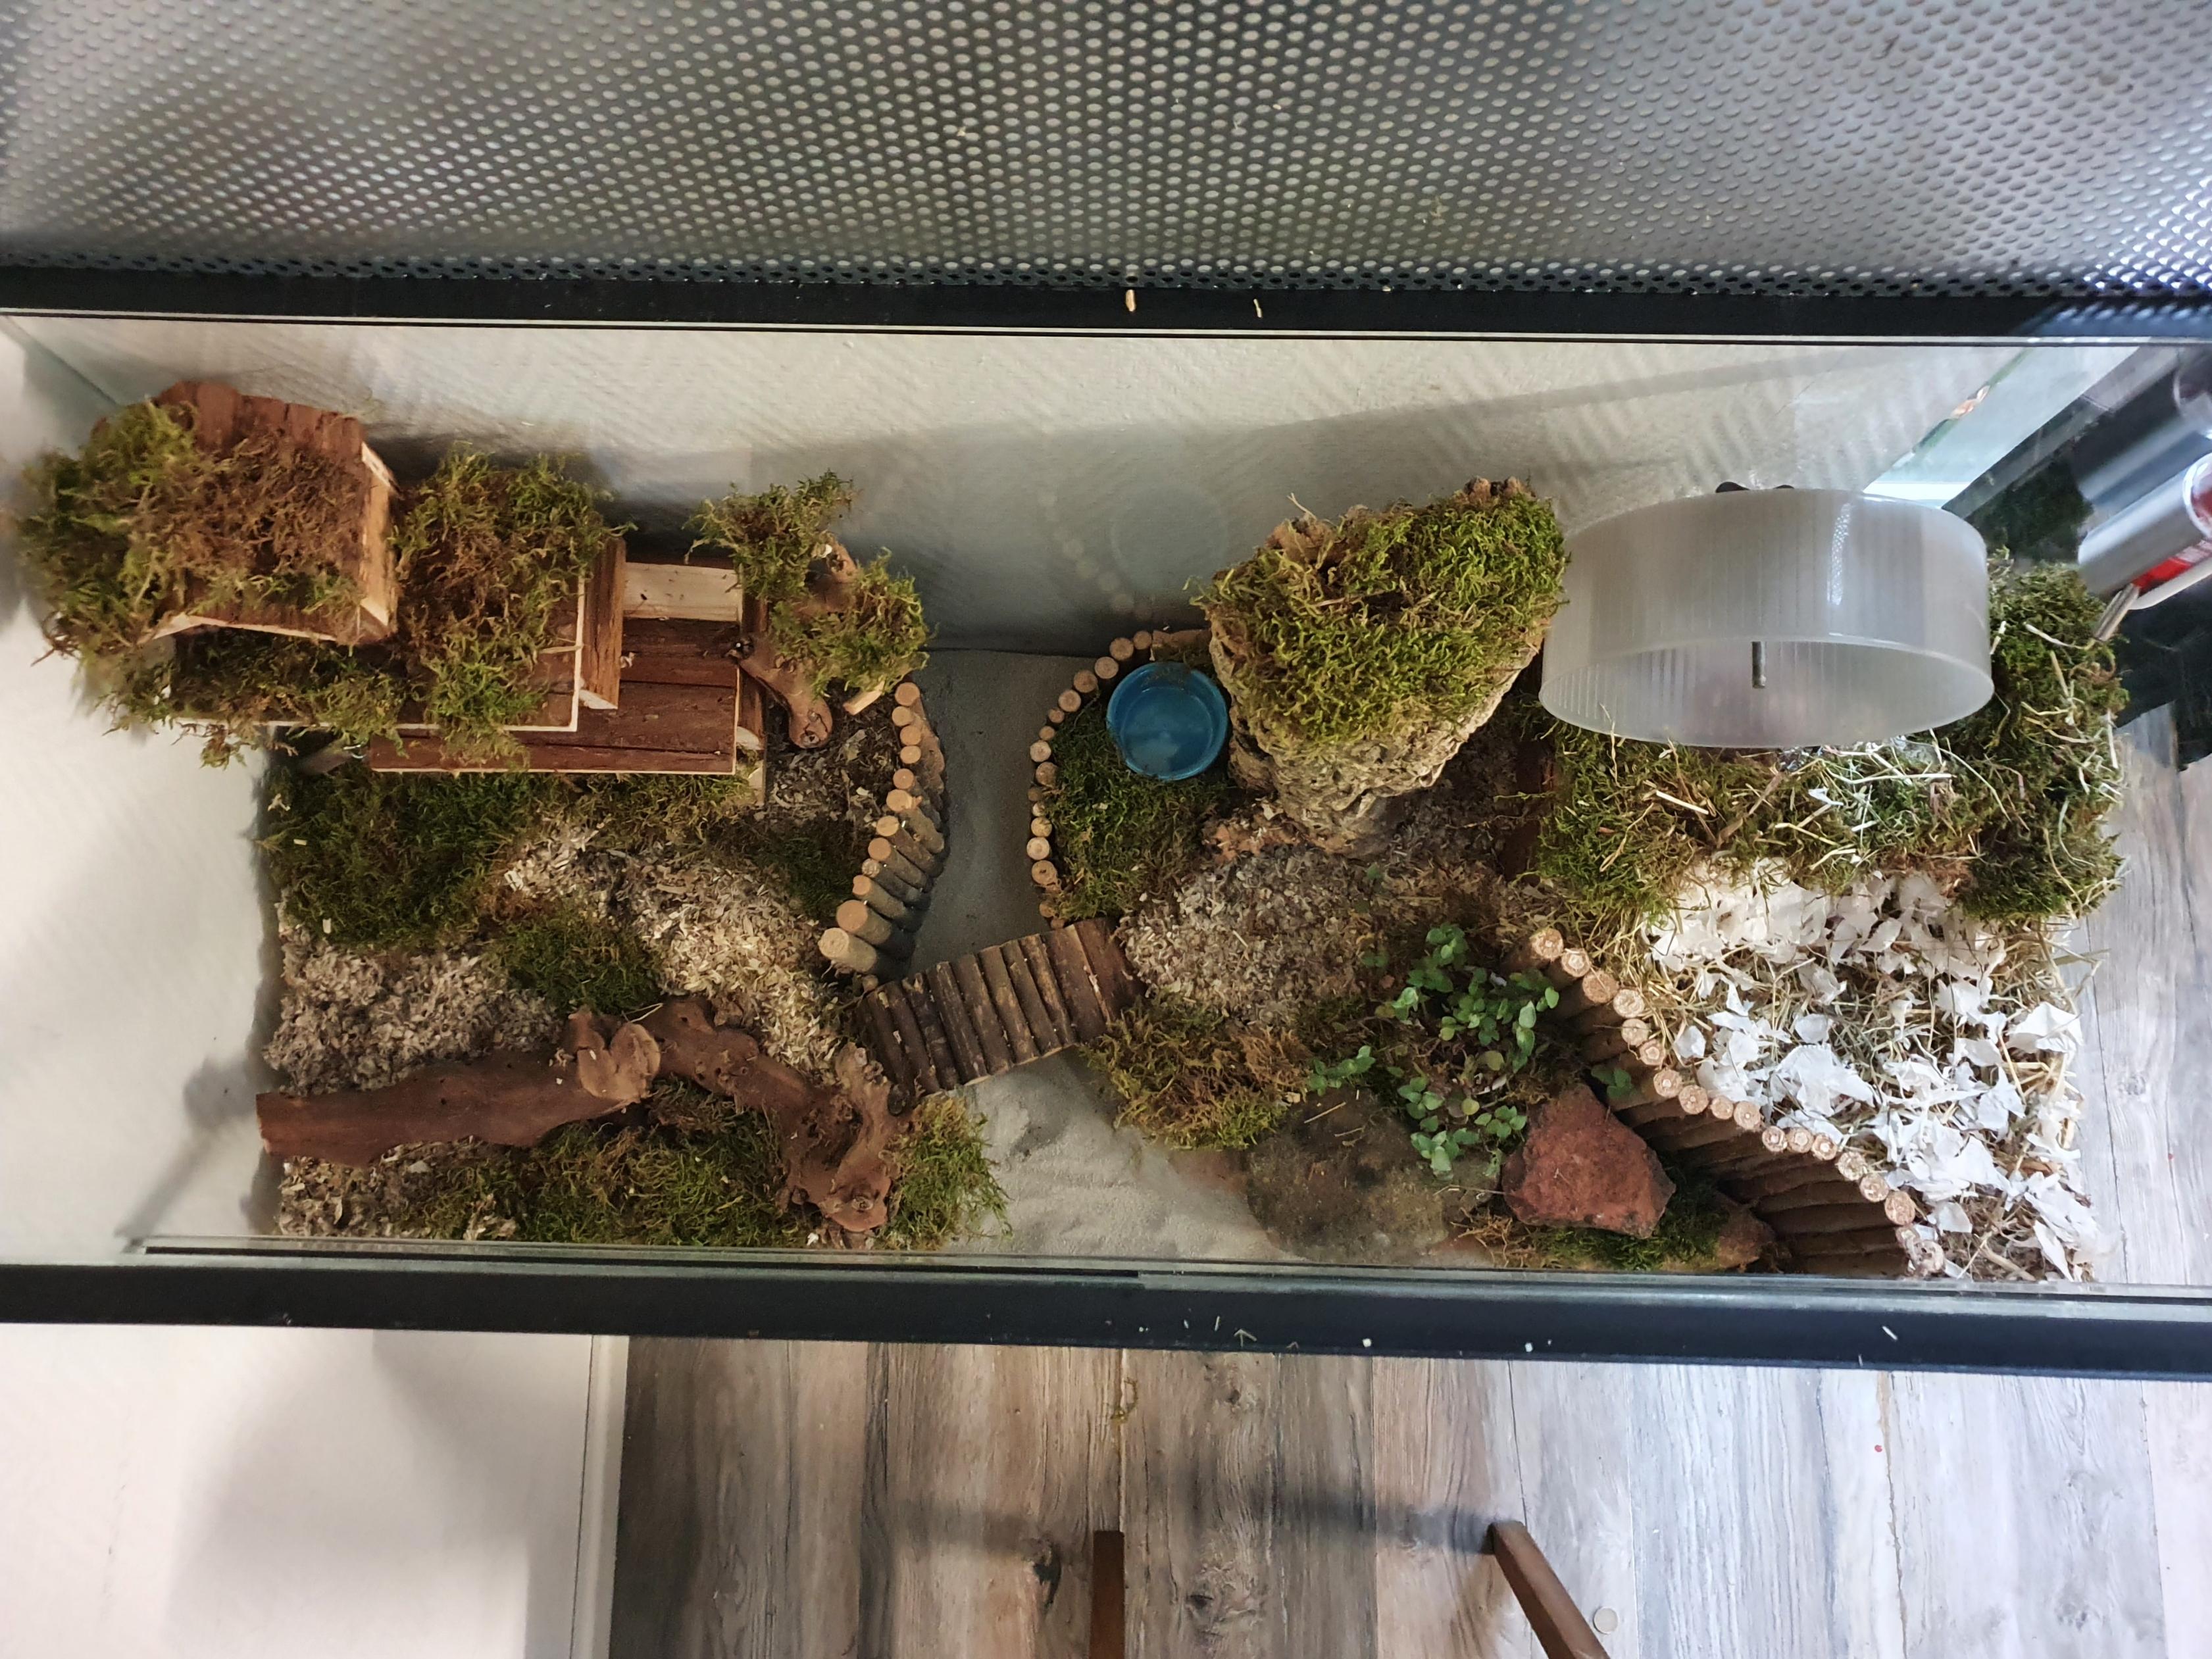 Hamster Terrarium met schuifruiten zonder plateaus